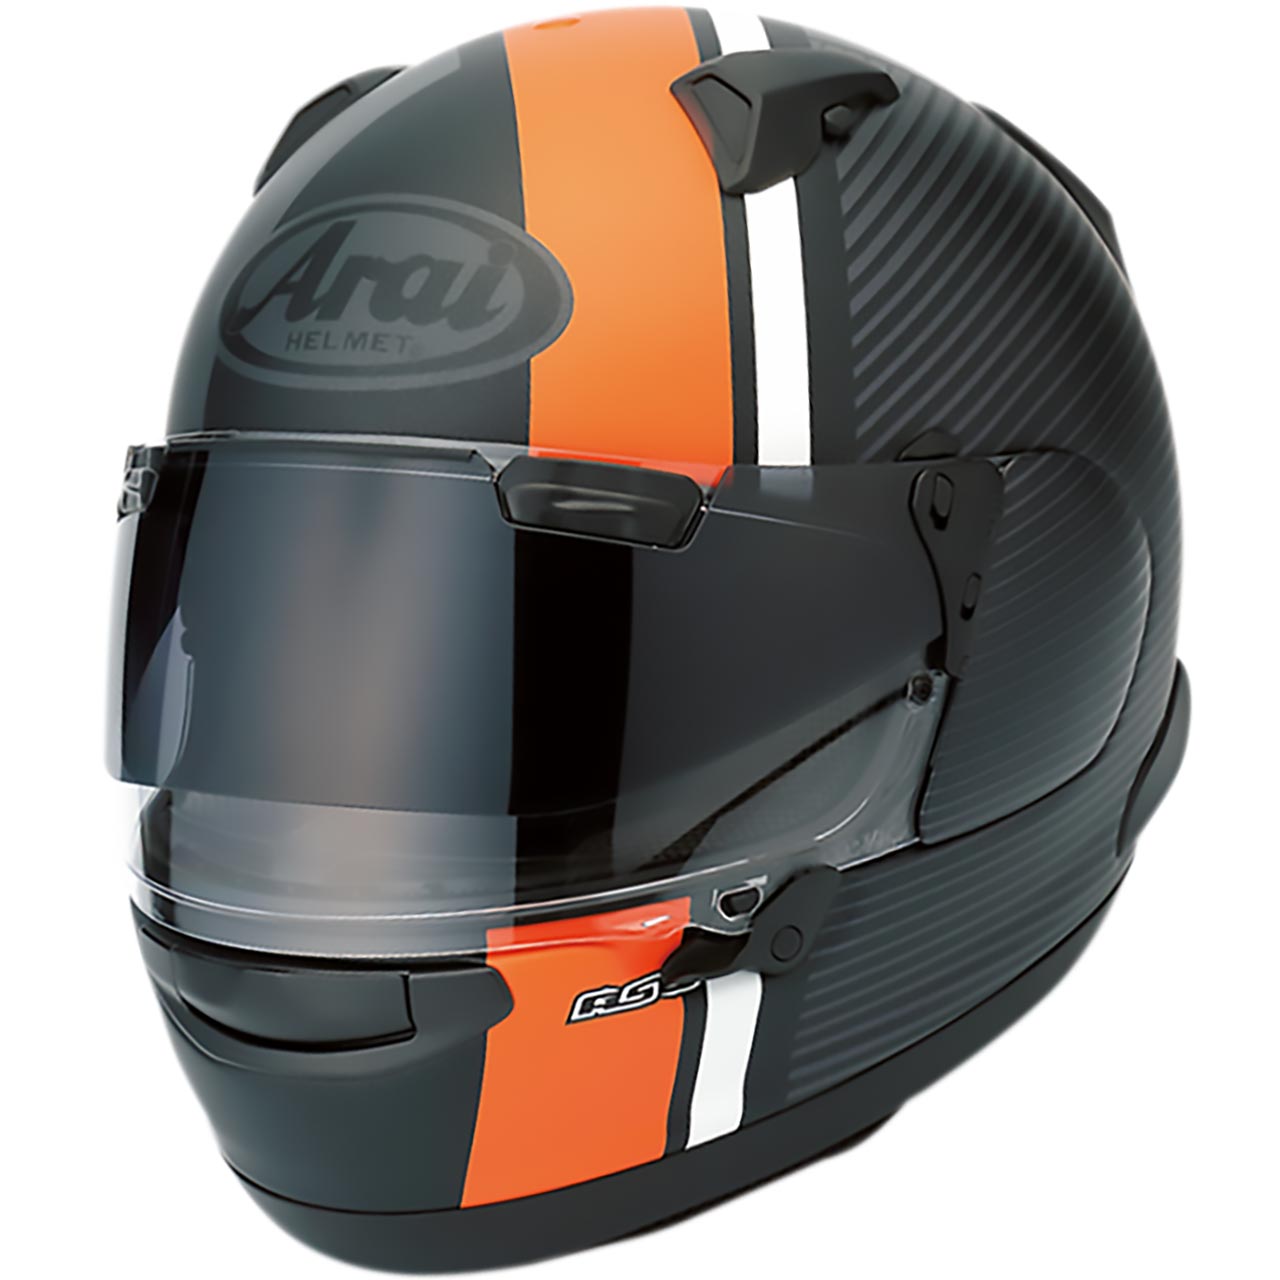 頭から顔まで頭部全体を覆う形のヘルメット。レース用からツーリング仕様まで、さまざまなデザインのものがある。